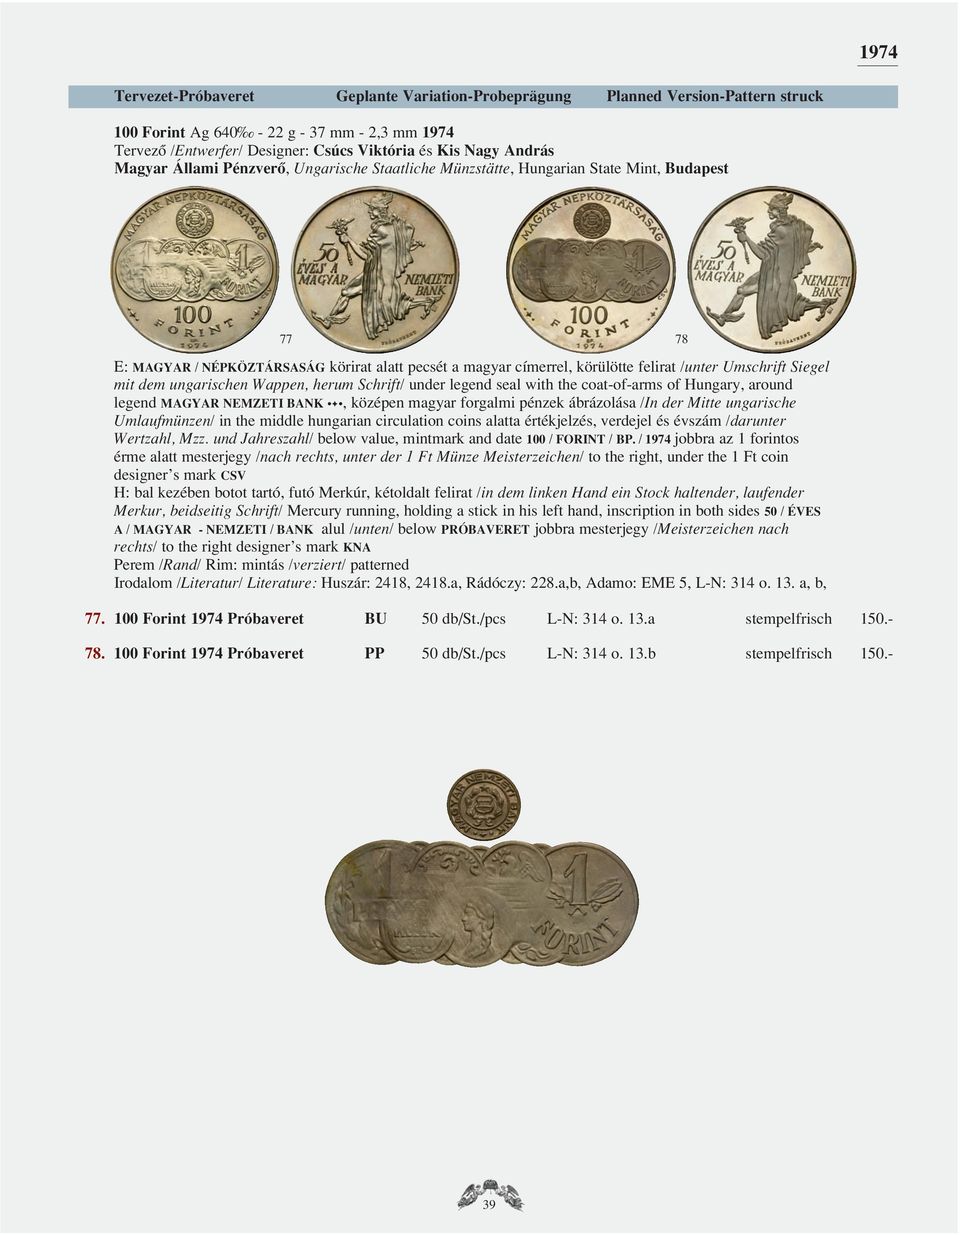 ábrázolása /In der Mitte ungarische Umlaufmünzen/ in the middle hungarian circulation coins alatta értékjelzés, verdejel és évszám /darunter Wertzahl, Mzz.